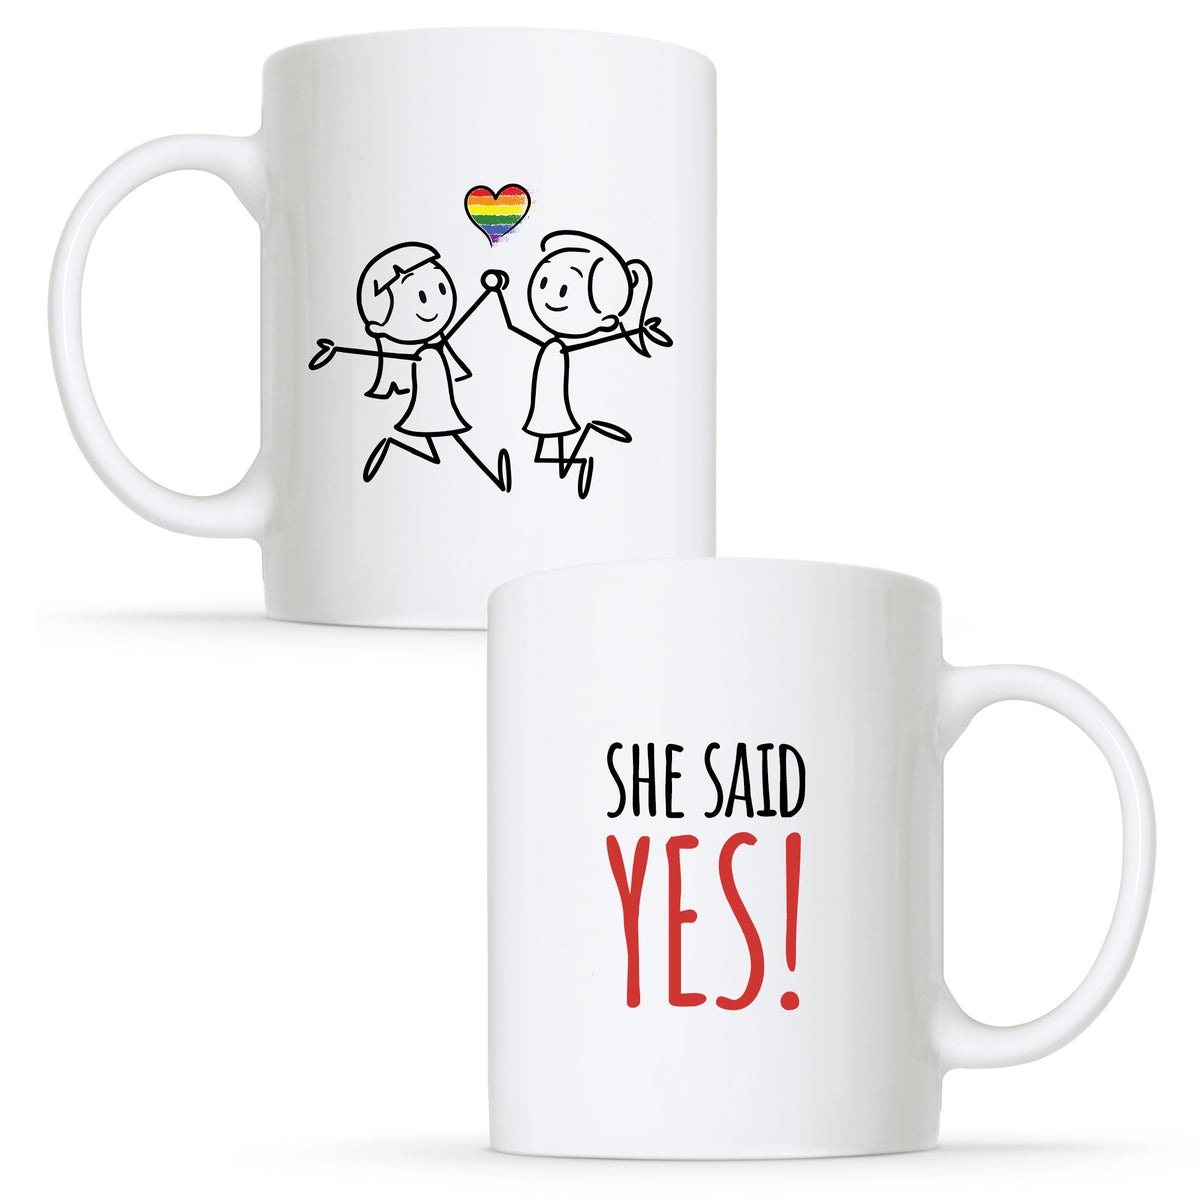 She Said Yes - Lesbian Gay Couple Engagement Mug Set | Gift